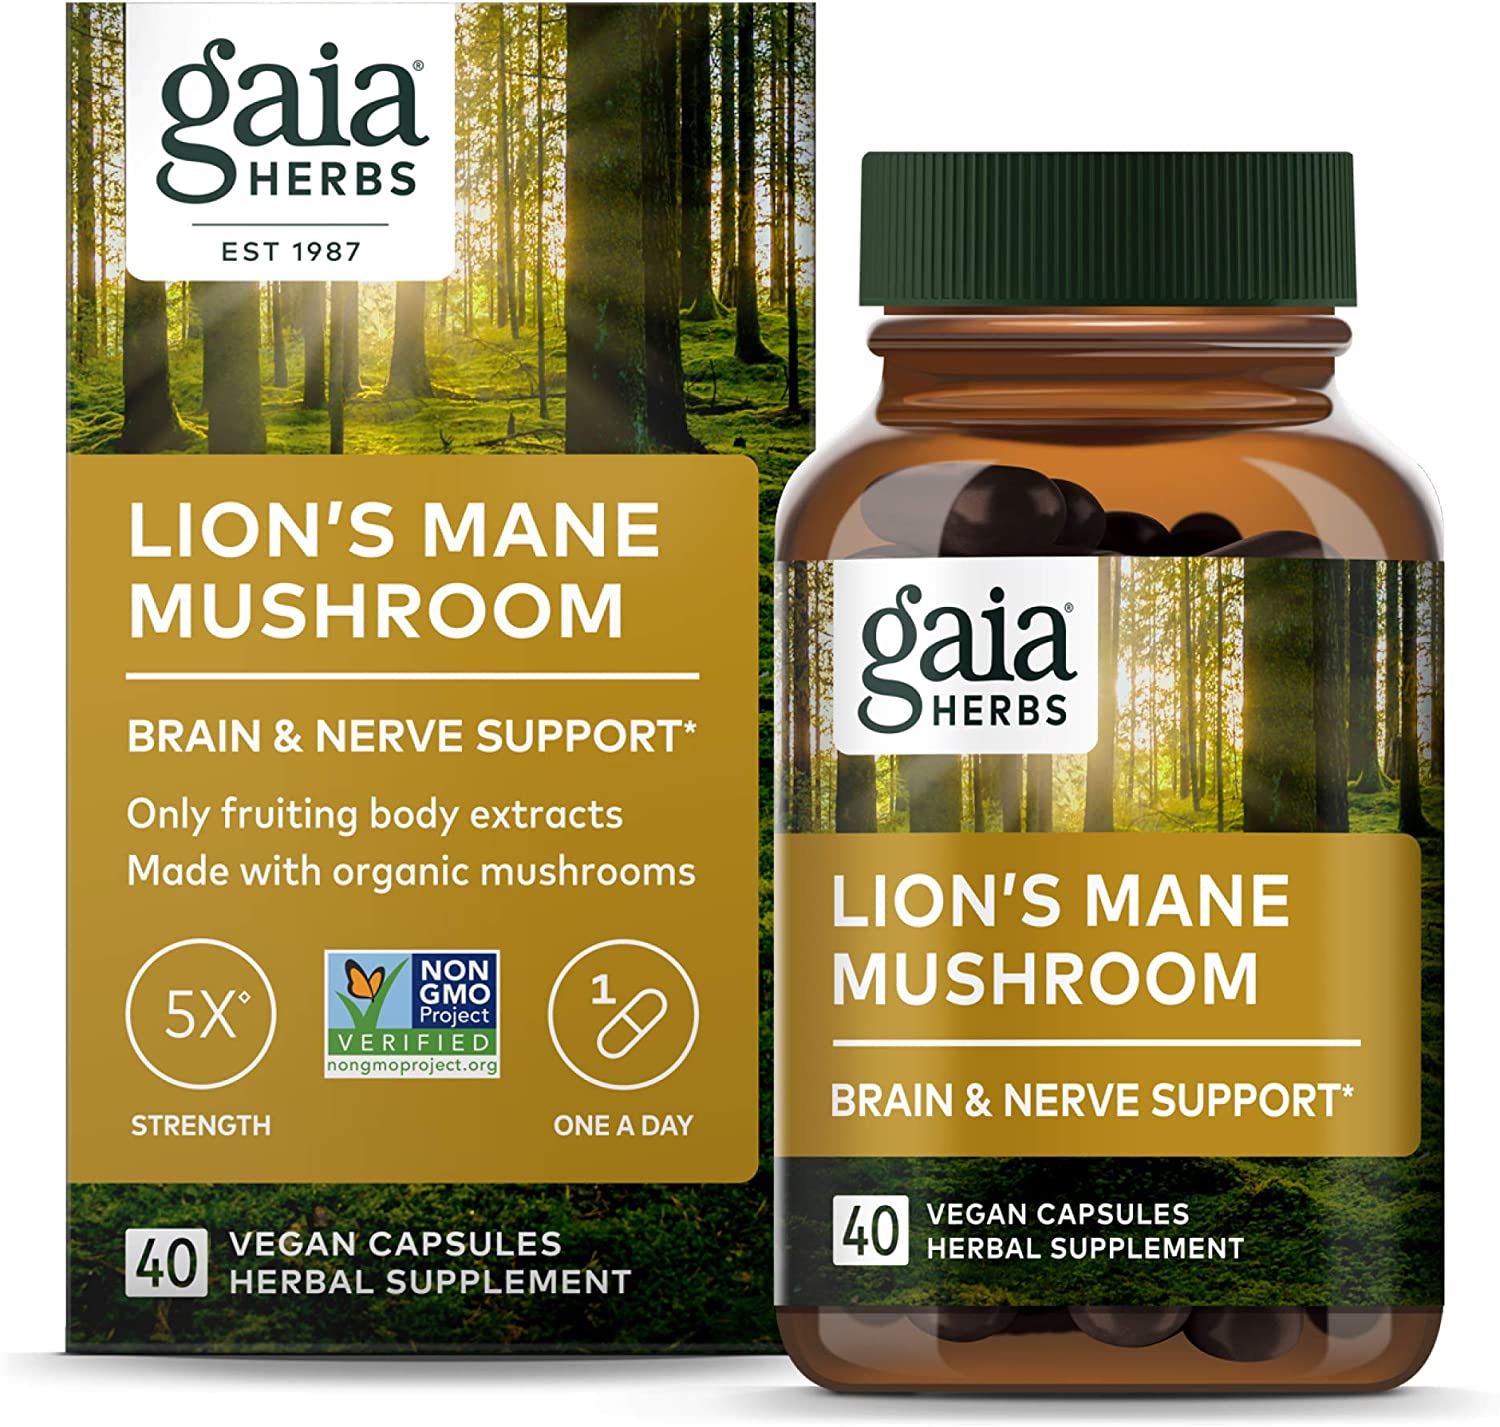 Gaia Lions Mane Mushroom 40 Vegan Capsules 